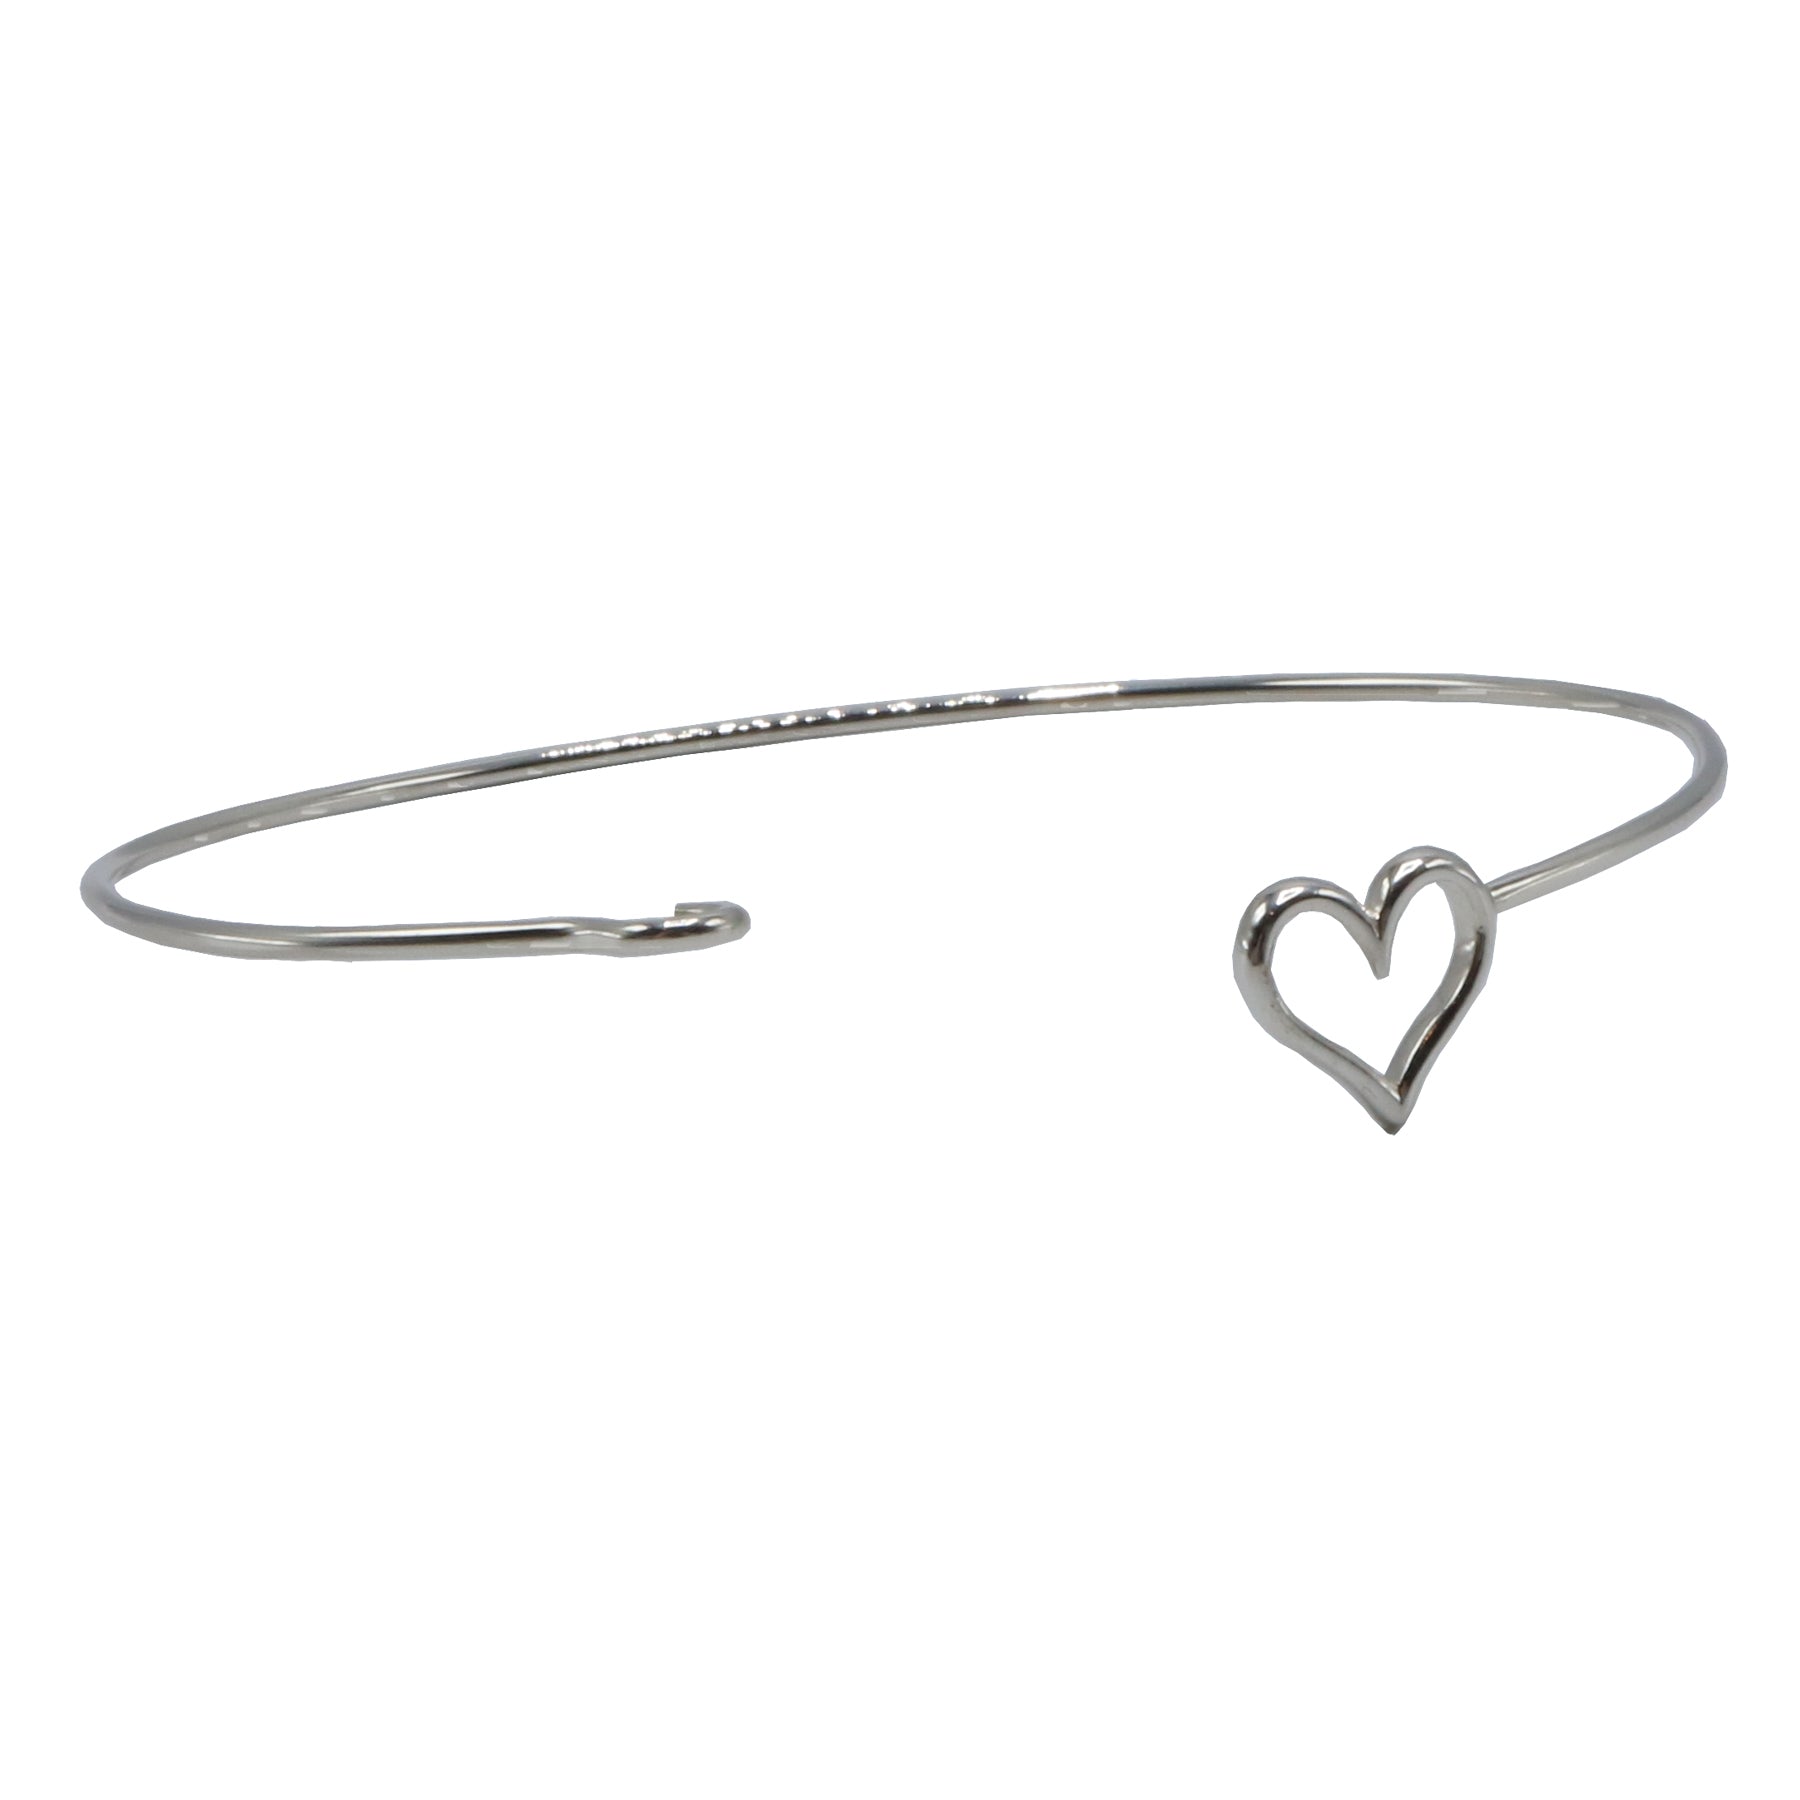 https://www.foldgoods.com/cdn/shop/products/Nina-Designs-Heart-Hook-and-Eye-Charm-Bracelet-Sterling-Silver-Open.jpg?v=1674696719&width=1946